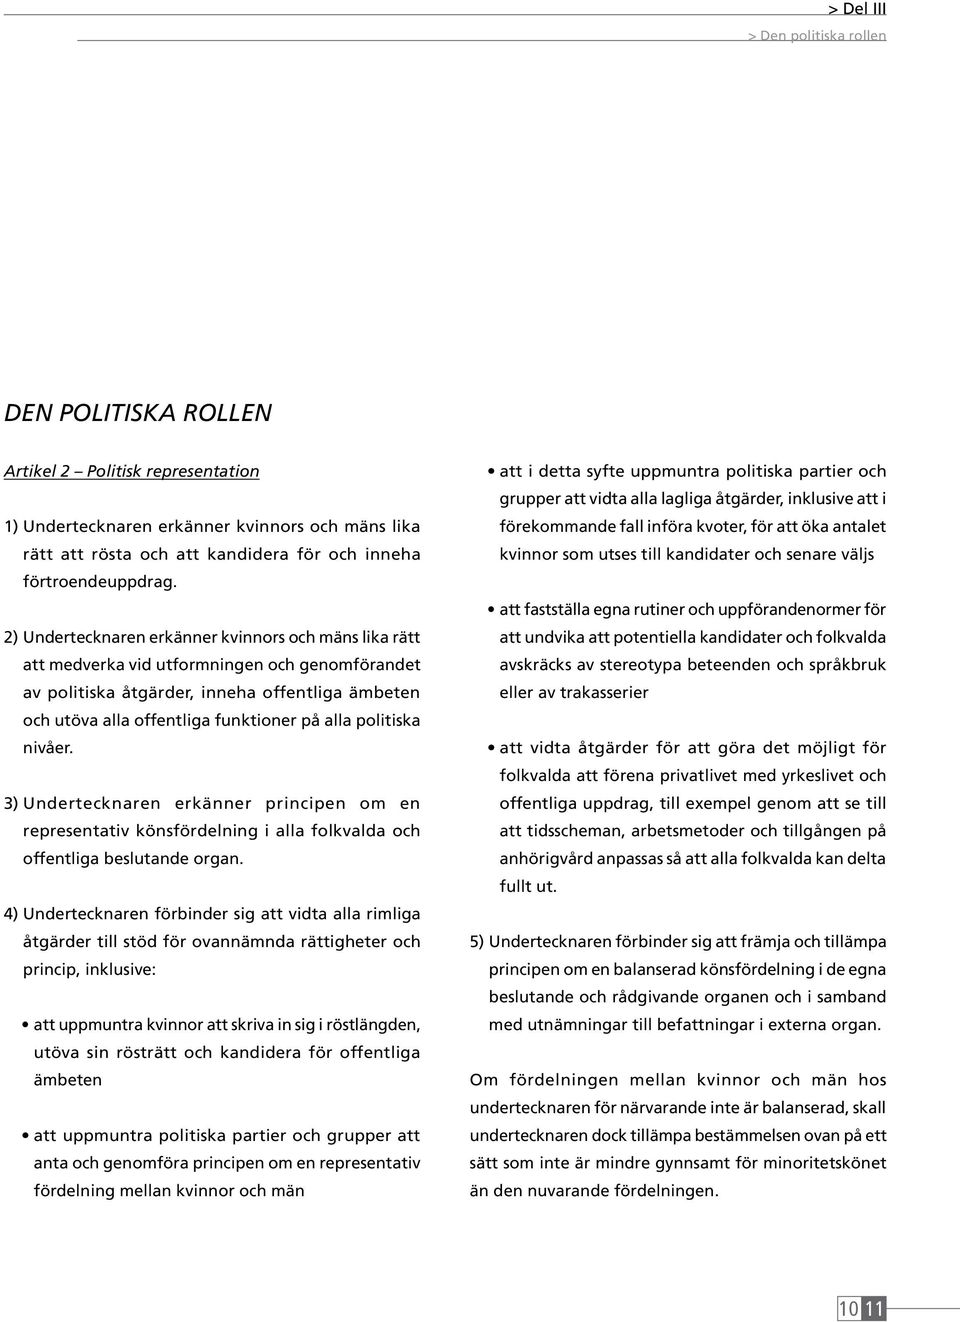 politiska nivåer. 3) Undertecknaren erkänner principen om en representativ könsfördelning i alla folkvalda och offentliga beslutande organ.